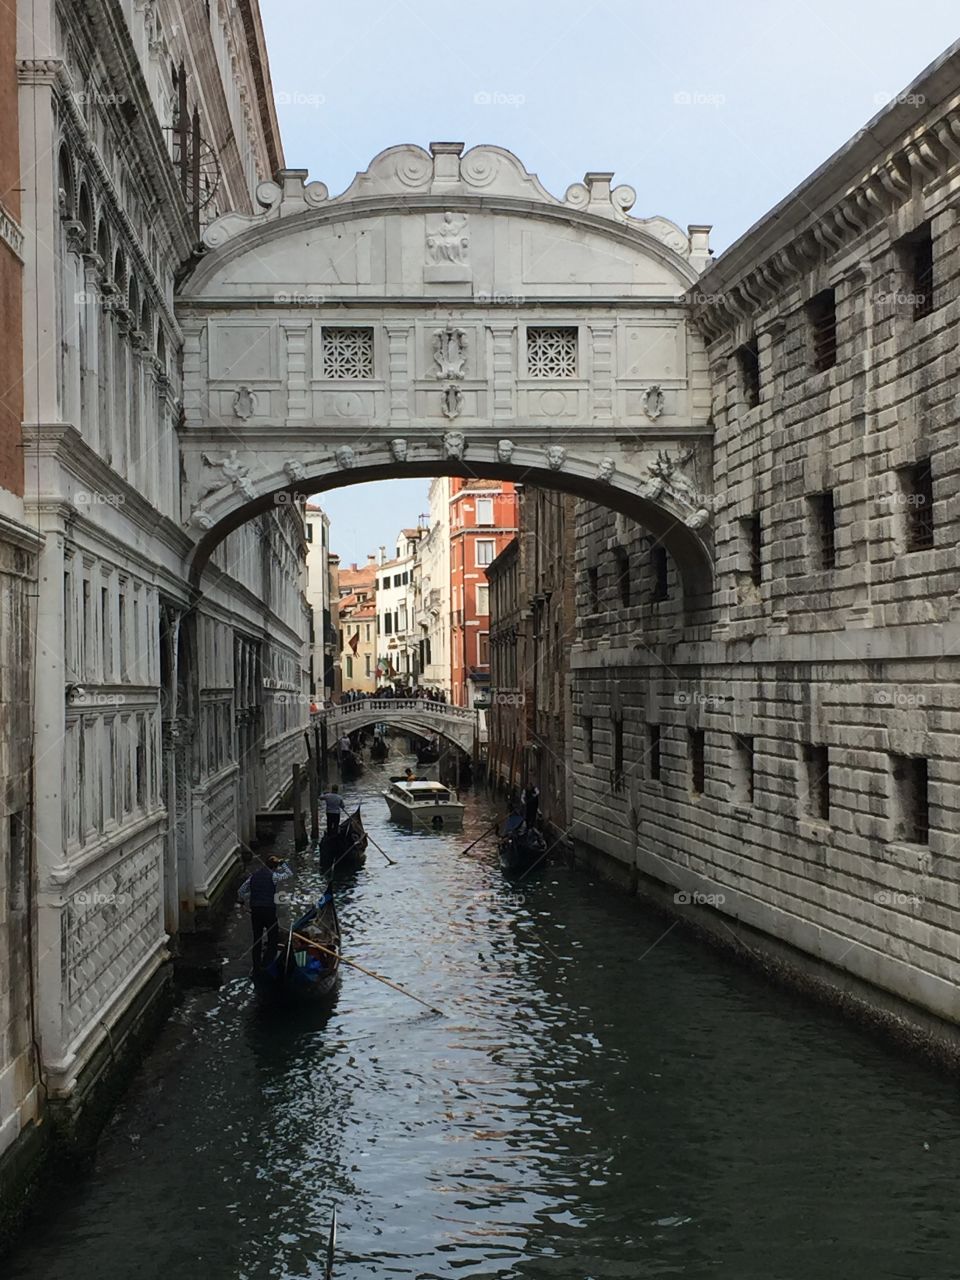 Bridge of sighs, Venice